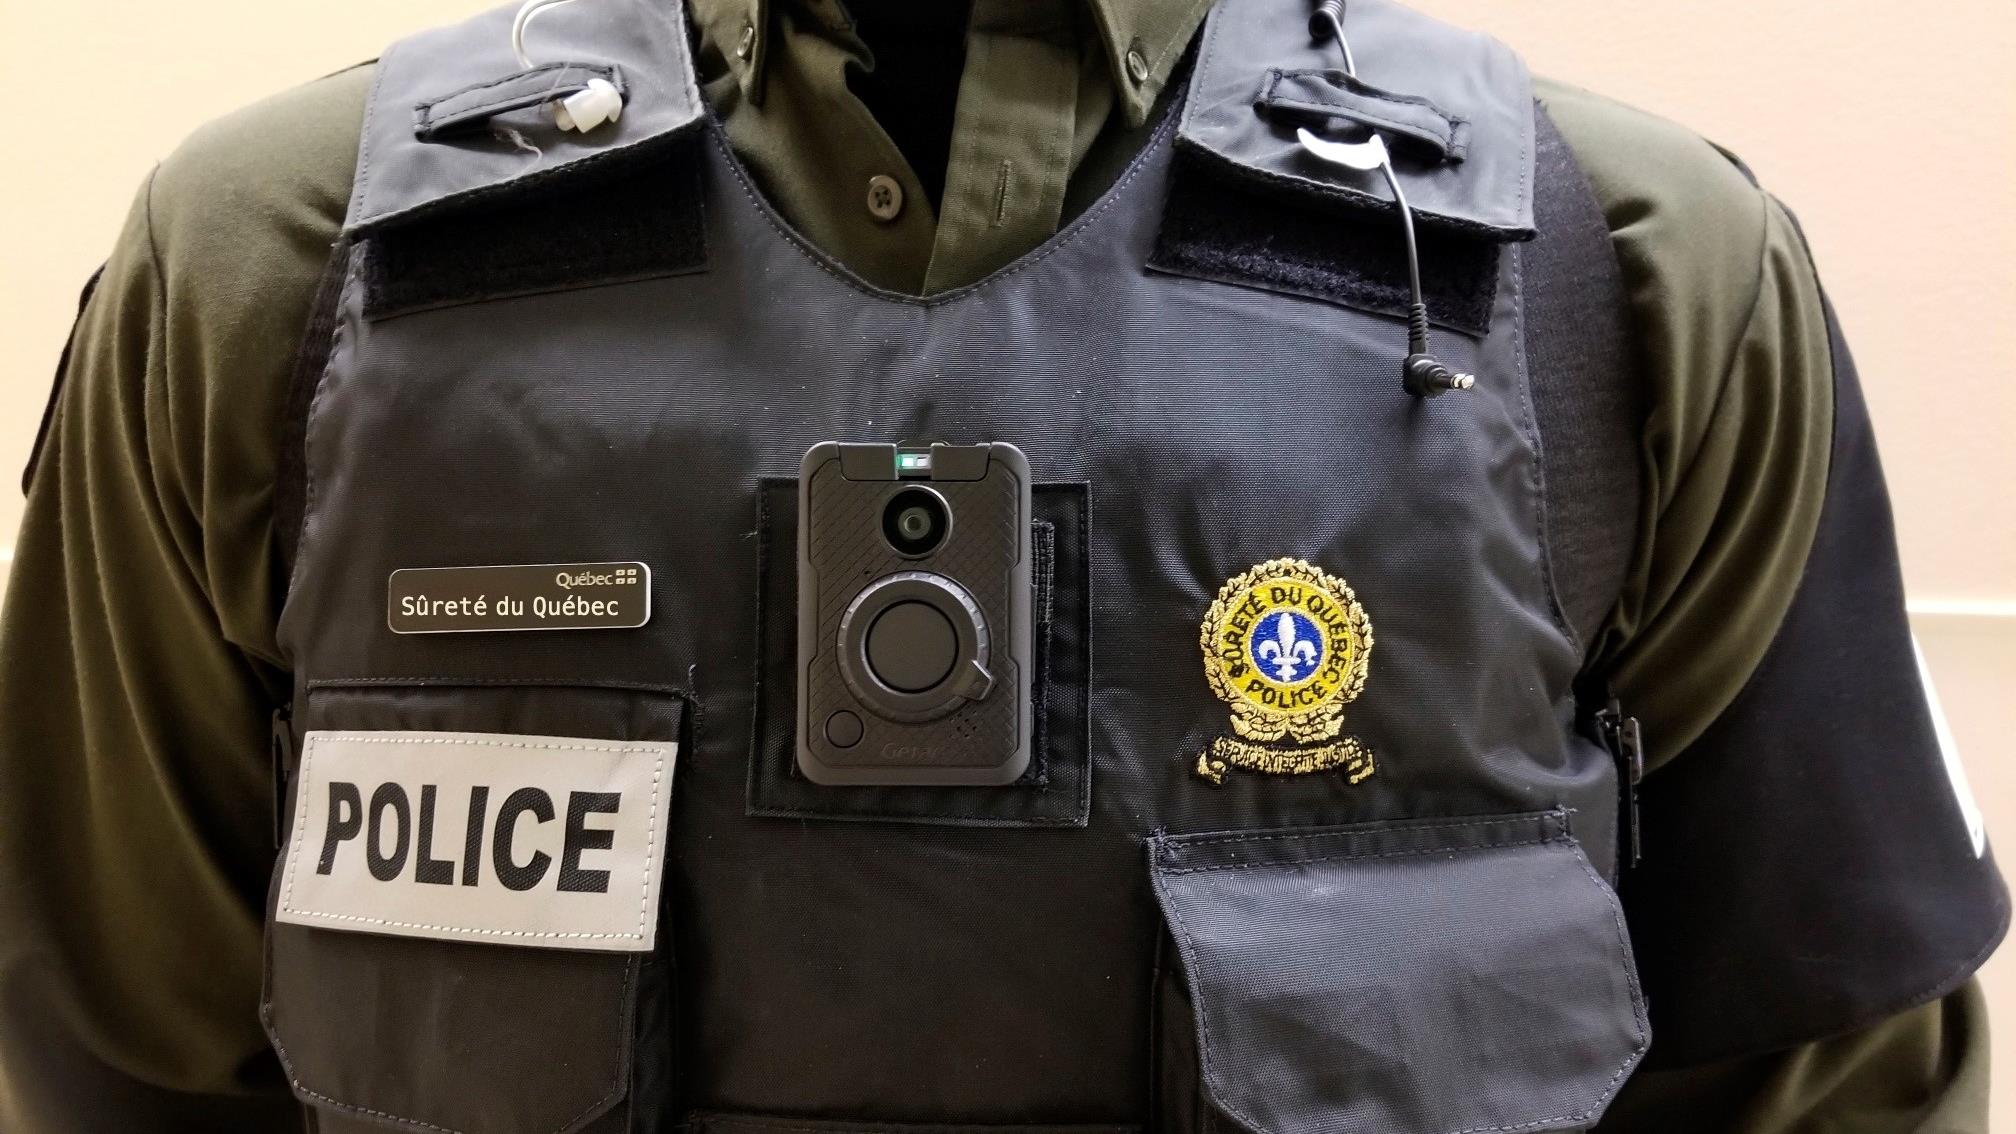 Les caméras corporelles portées par les policiers ne sont pas neutres